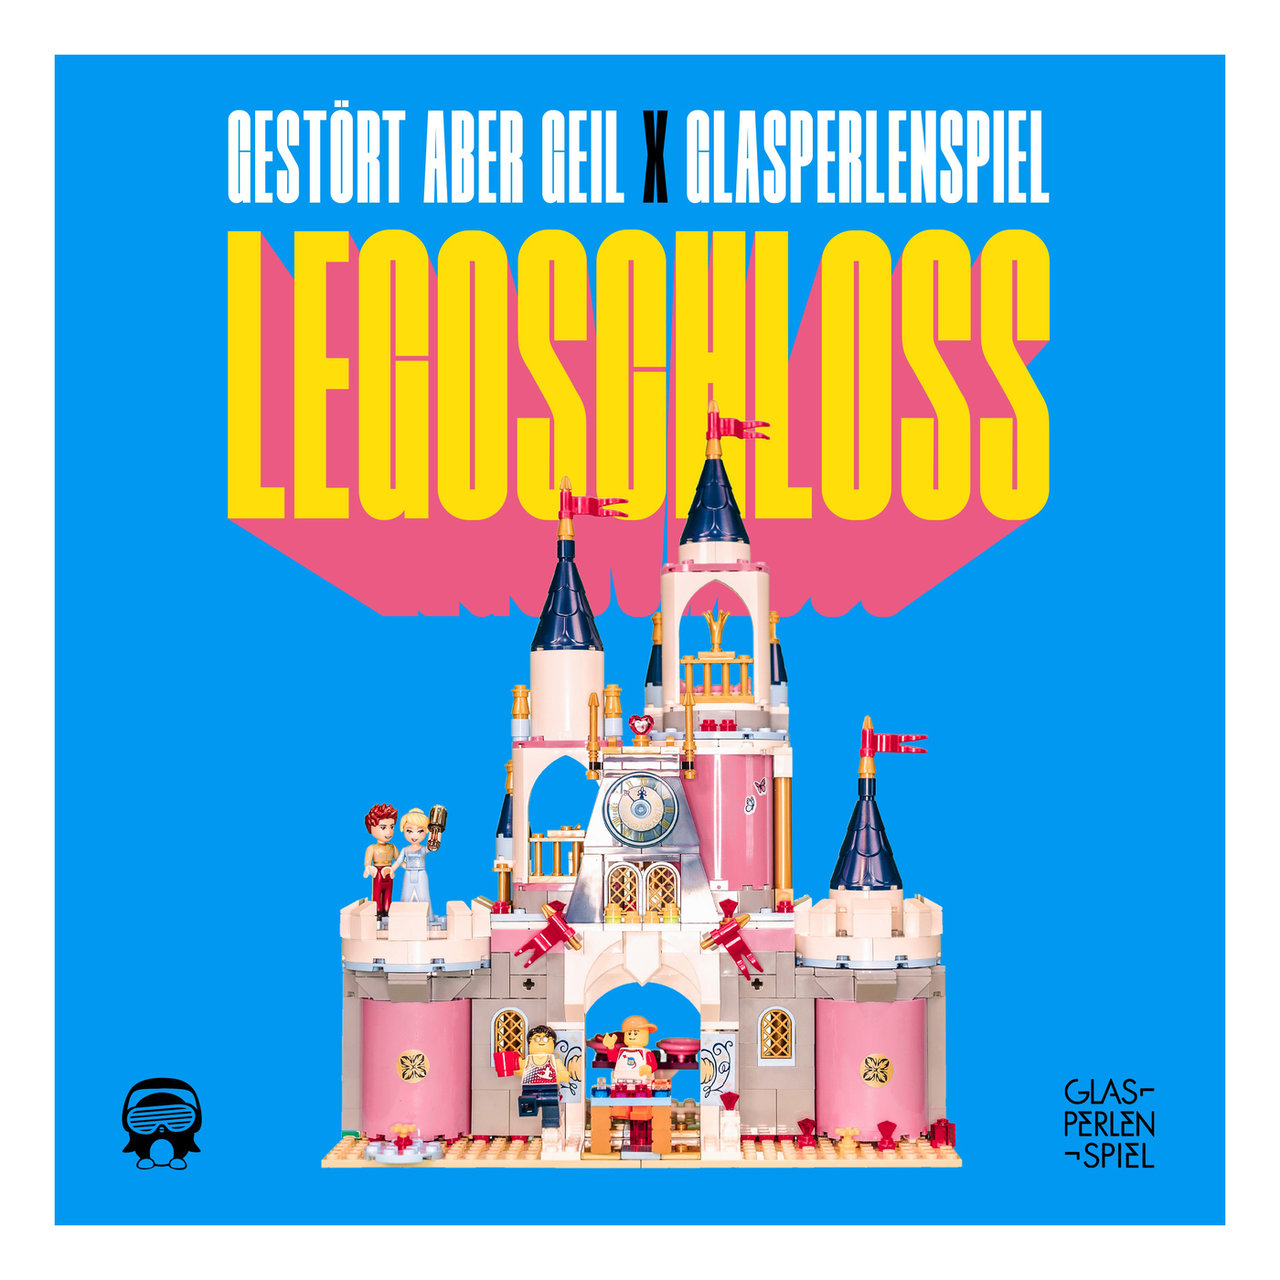 Glasperlenspiel featuring Gestört aber GeiL — Legoschloss cover artwork